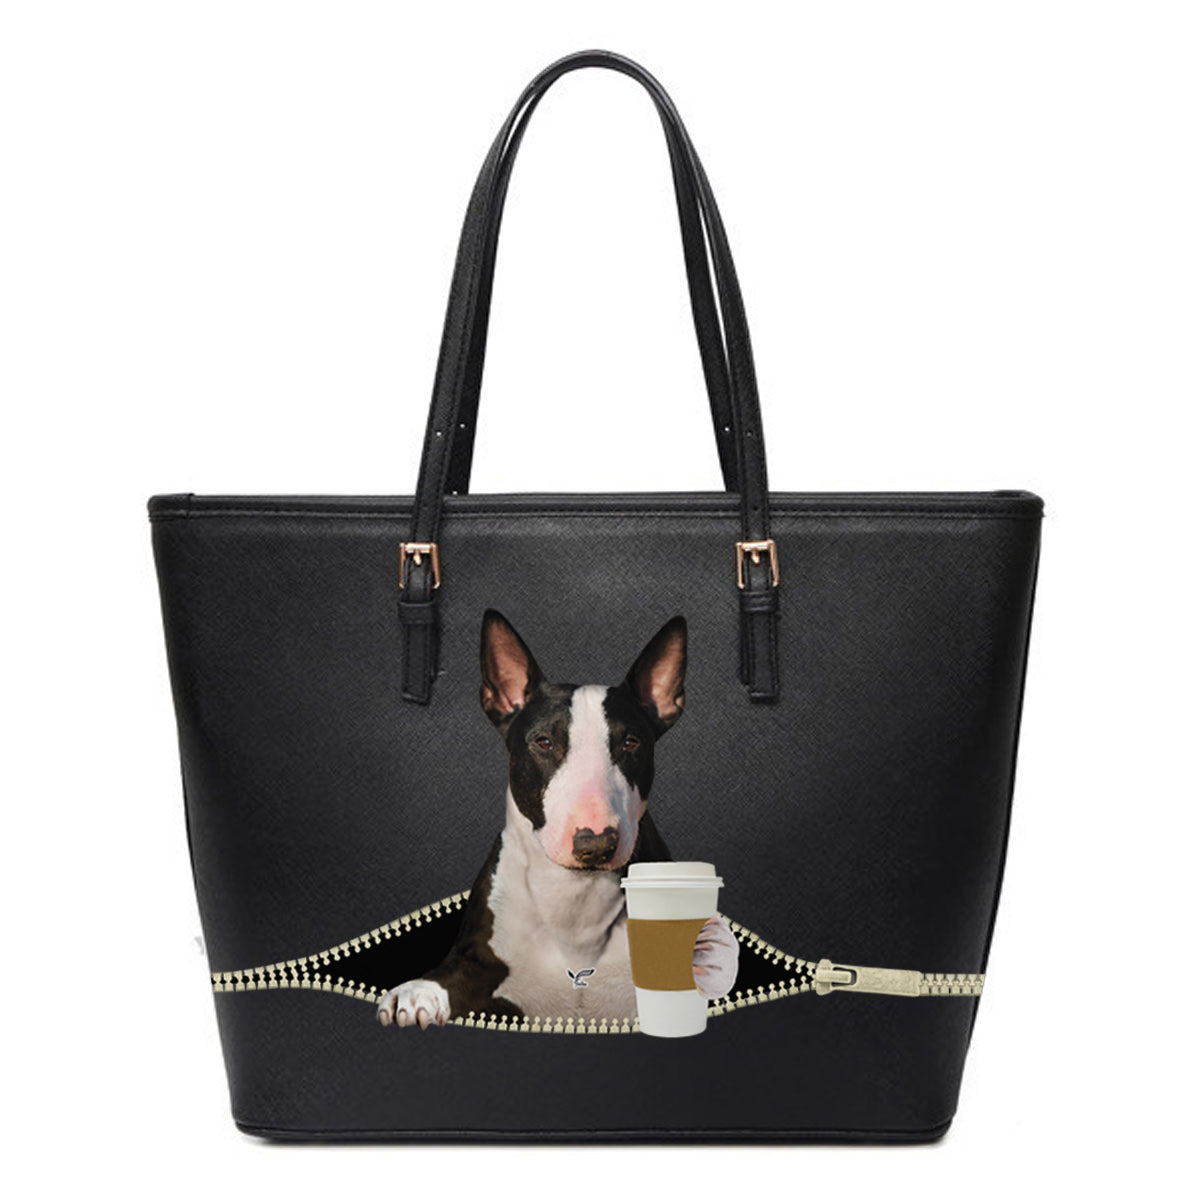 Good Morning - Bull Terrier Tote Bag V1